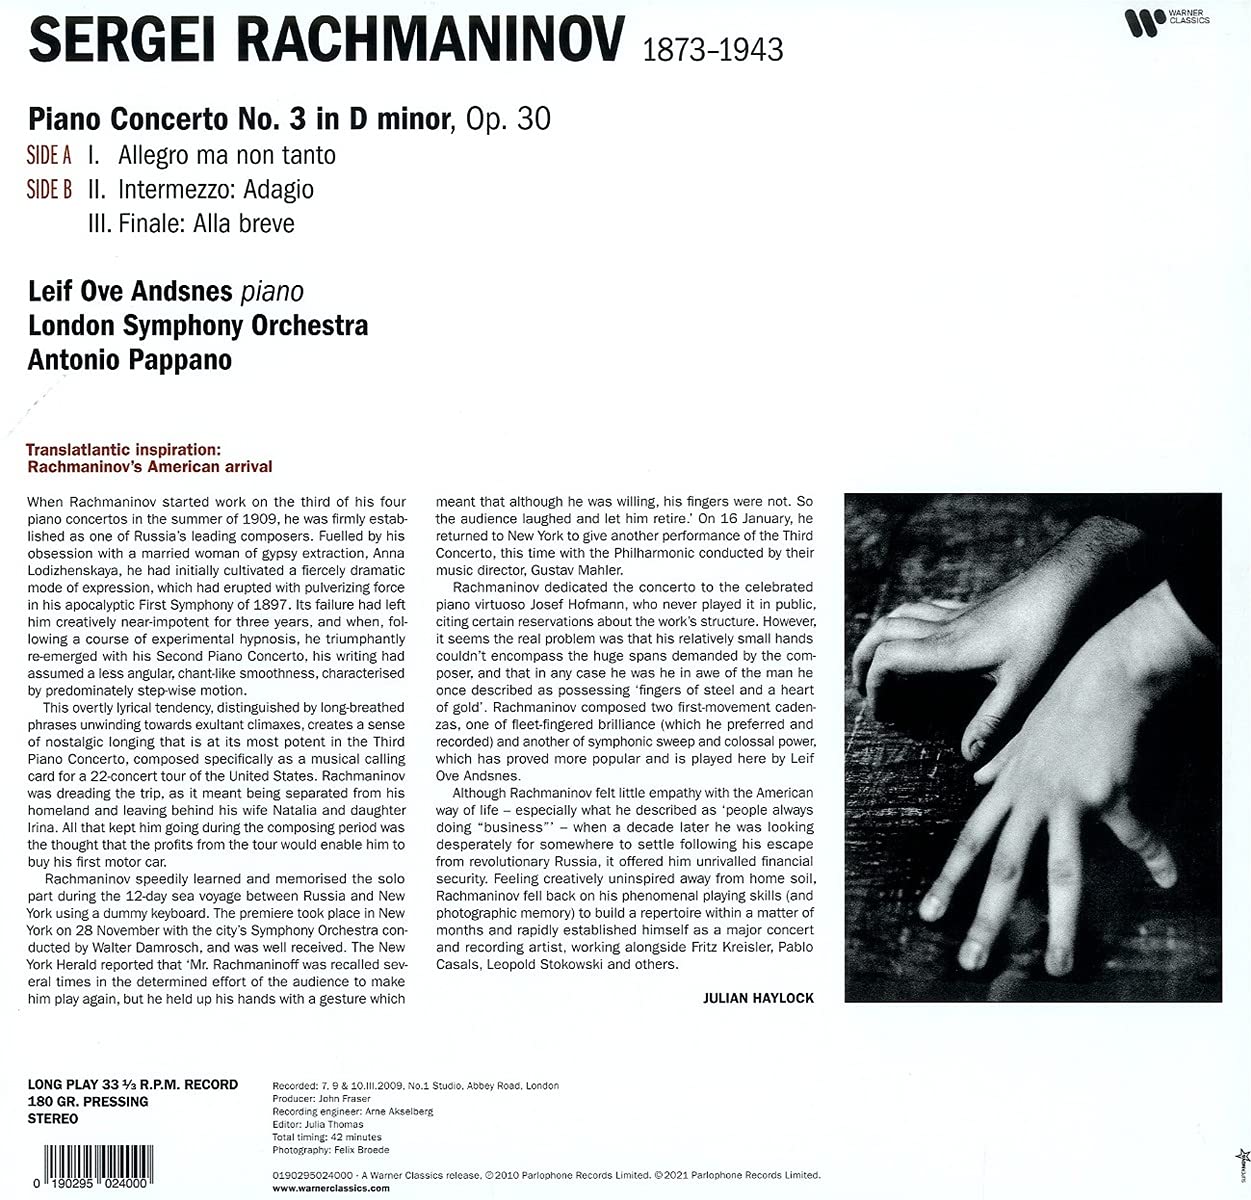 RACHMANINOV: PIANO CONCERTO NO. 3 - LEIF OVE ANDSNES, ANTONIO PAPPANO, LONDON SYMPHONY ORCHESTRA (LP)